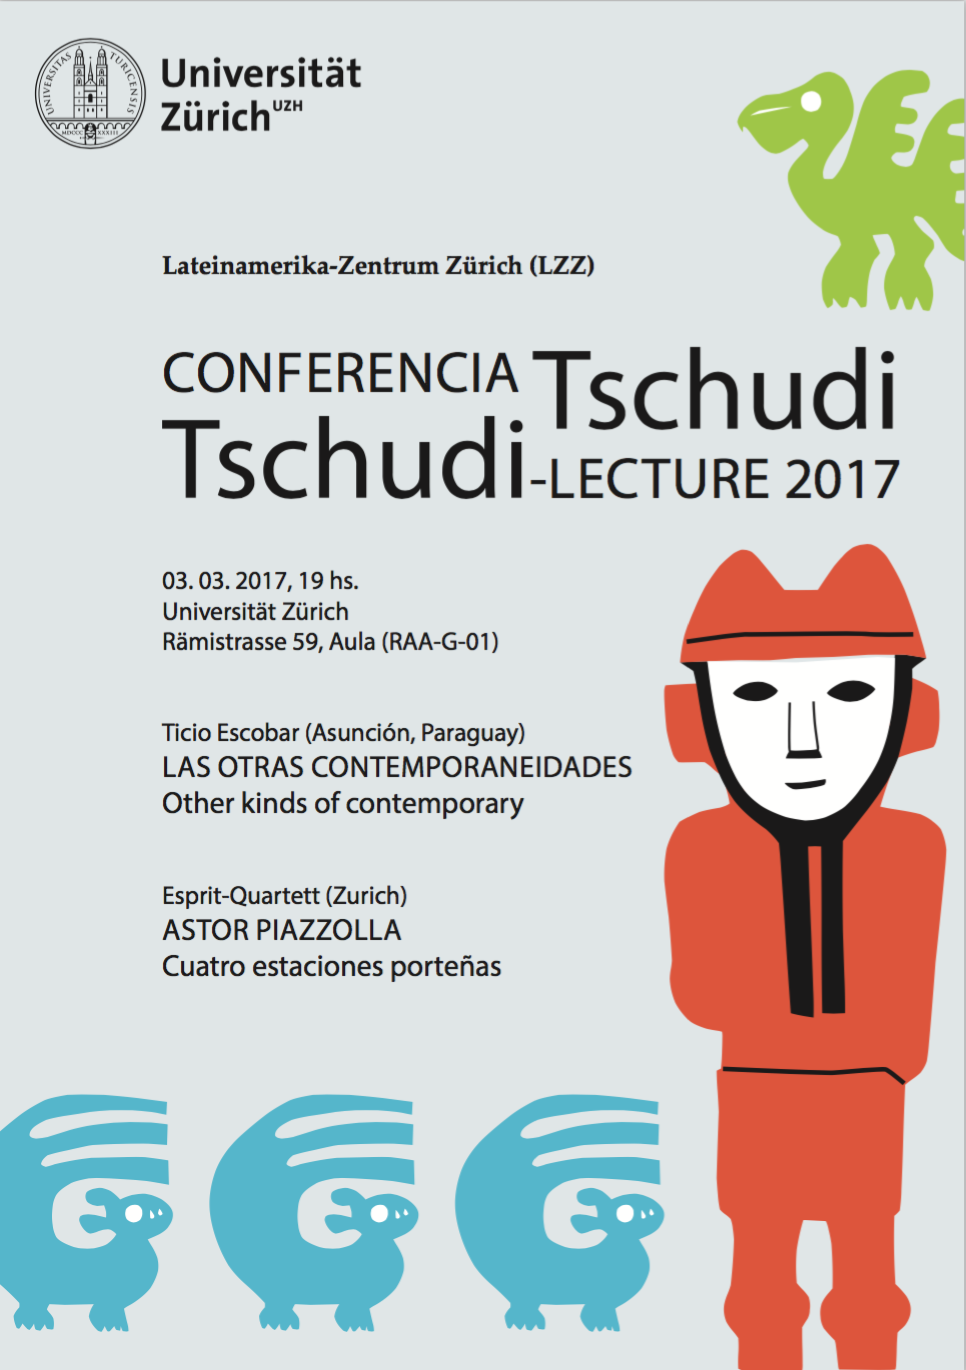 Tschudi Lecture 2017